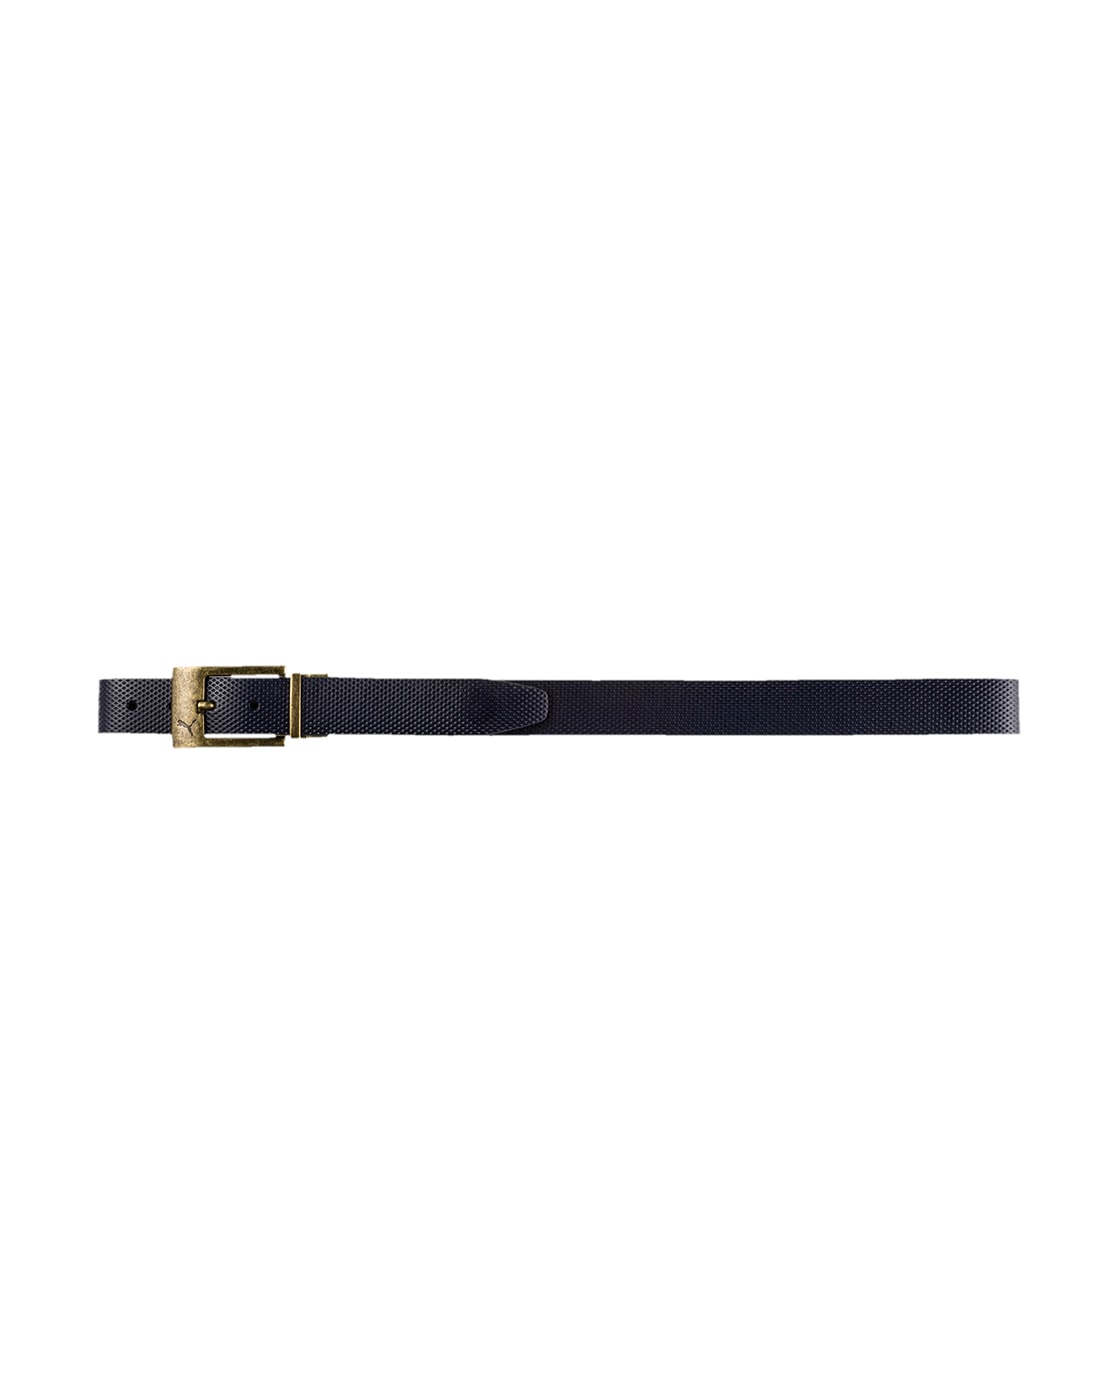 buy puma belts online